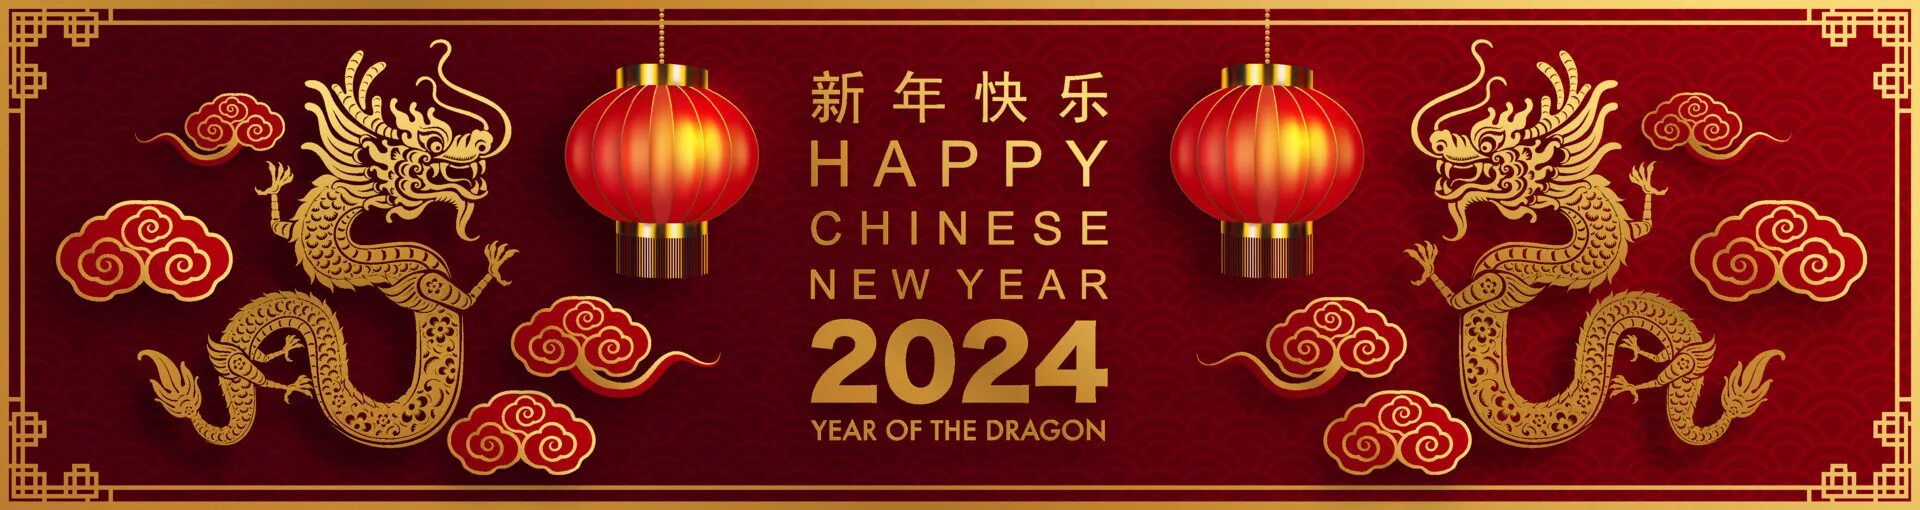 Китайский новый год дракона 2024. Китайский новый год 2024. С китайским новым годом 2024. Китайский новый год 2024 символ. Когда наступит китайский 2024 год